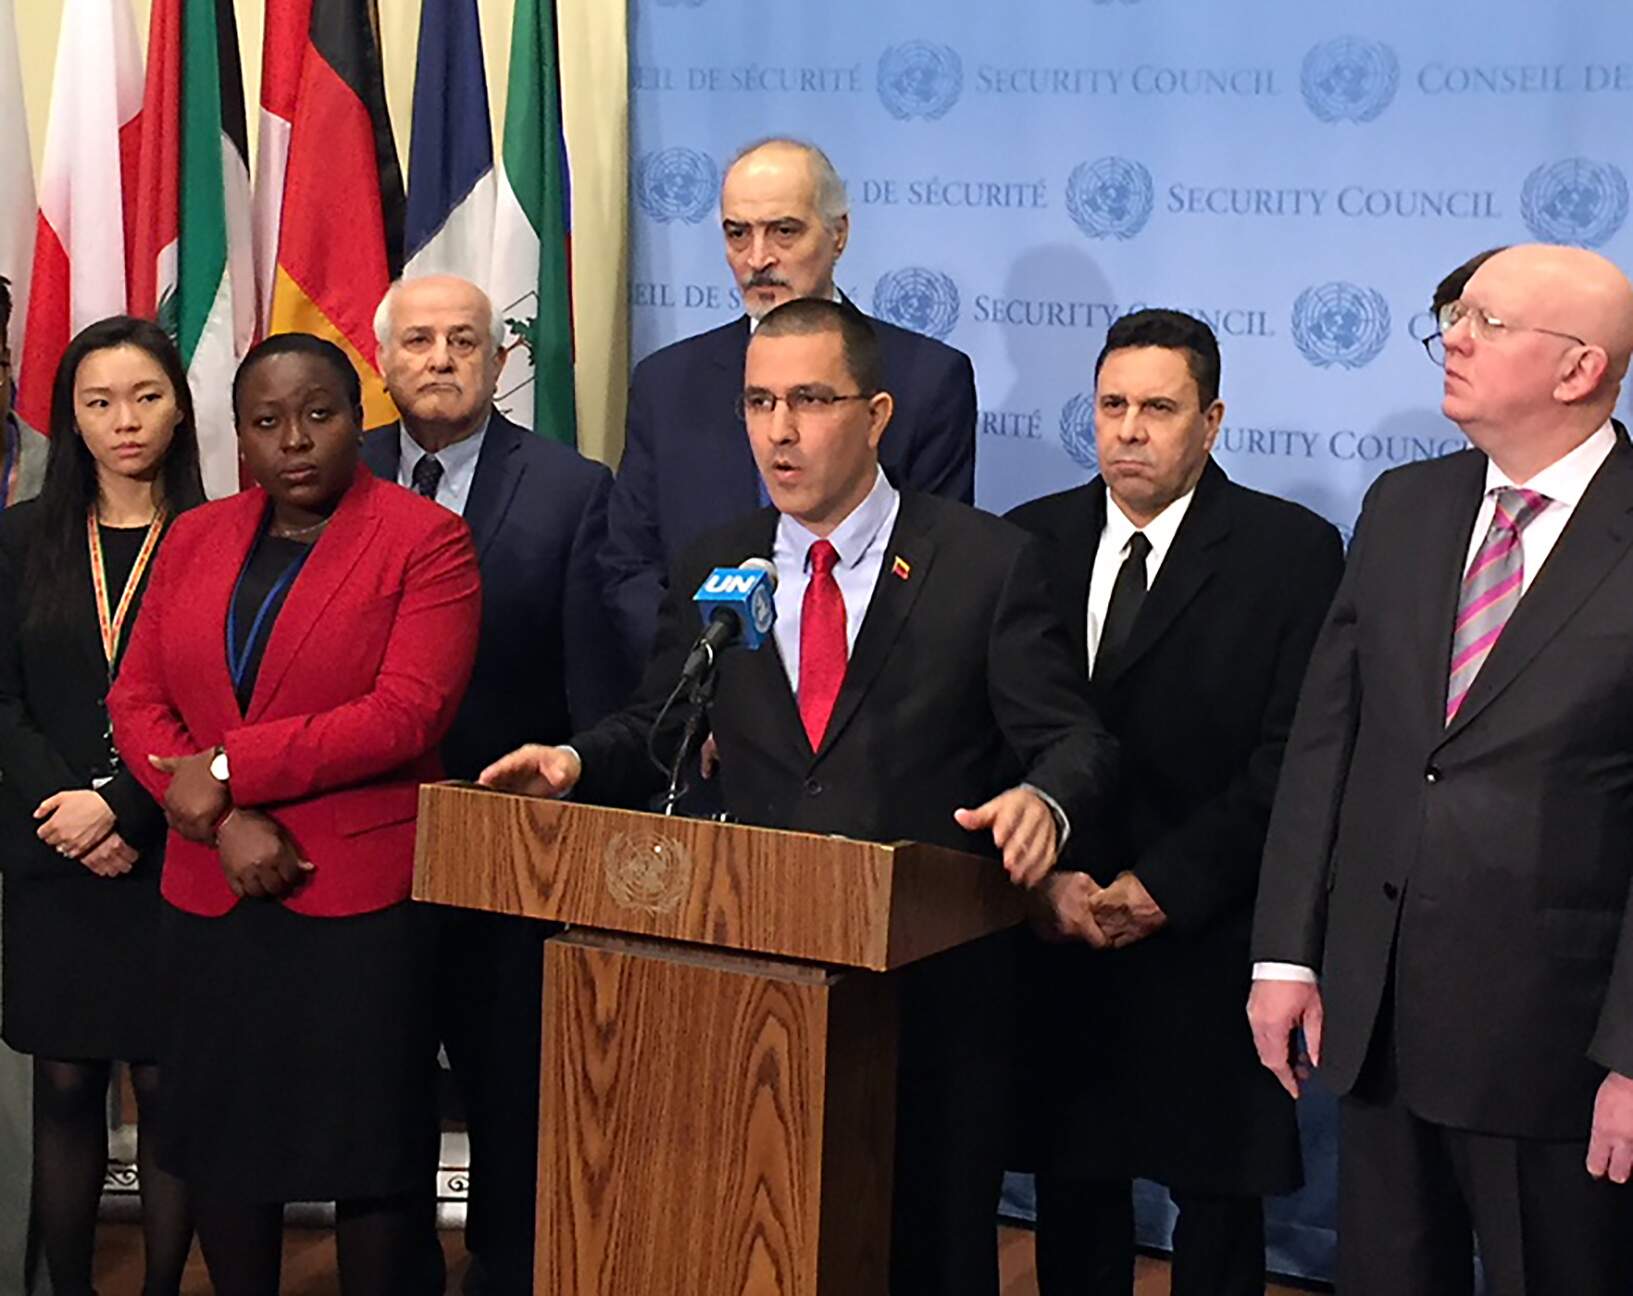 Chanceler venezuelano Jorge Arreaza anunciou ontem criação de grupo de apoio à Venezuela na ONU